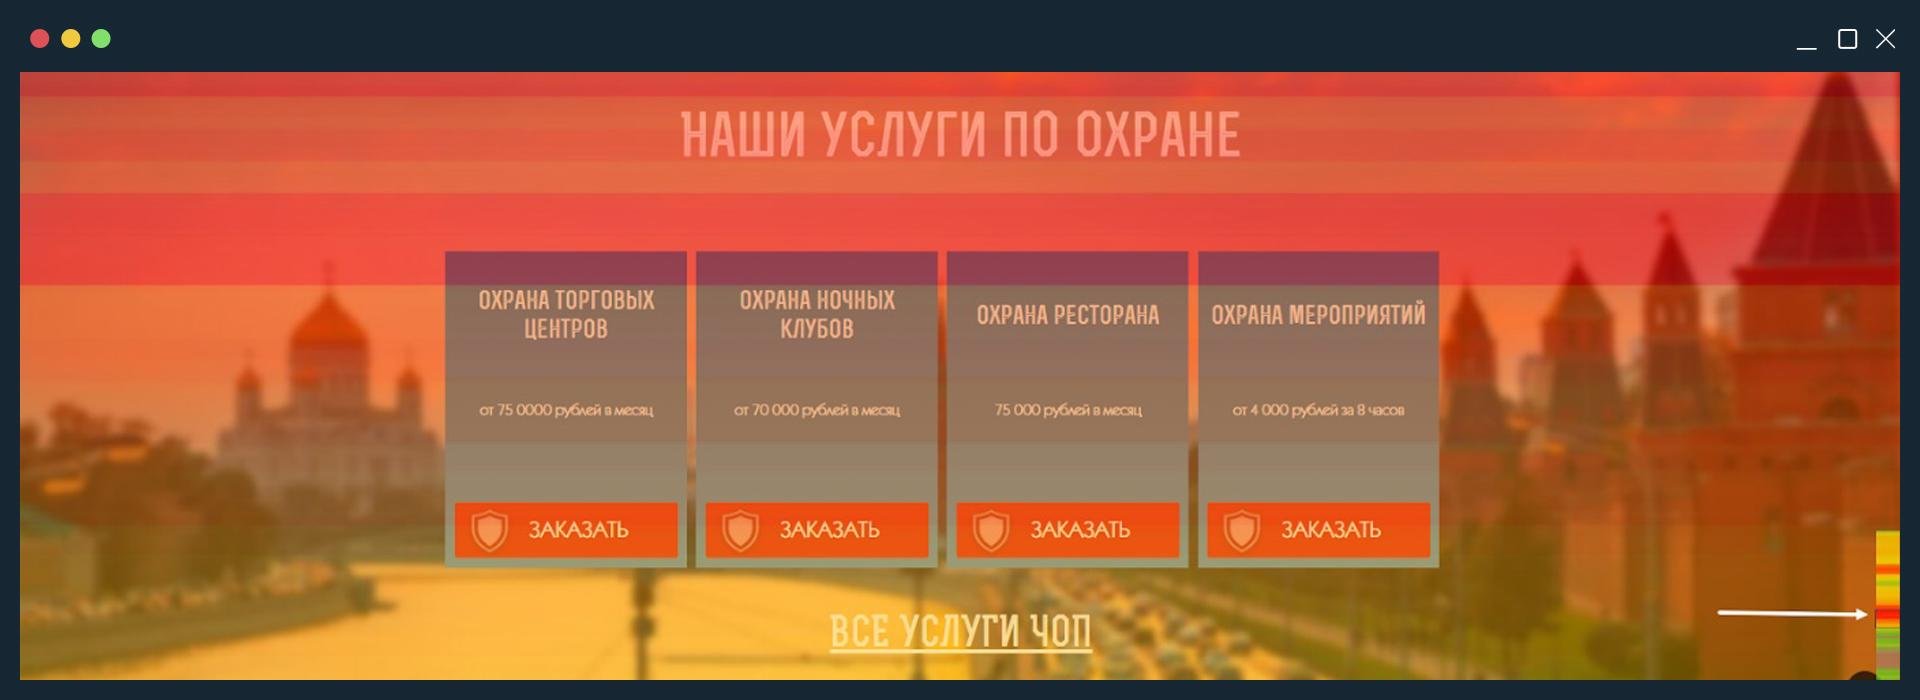 Пример юзабилити-аудита по данным Яндекс Метрики и общим нормам UX/UI-дизайна